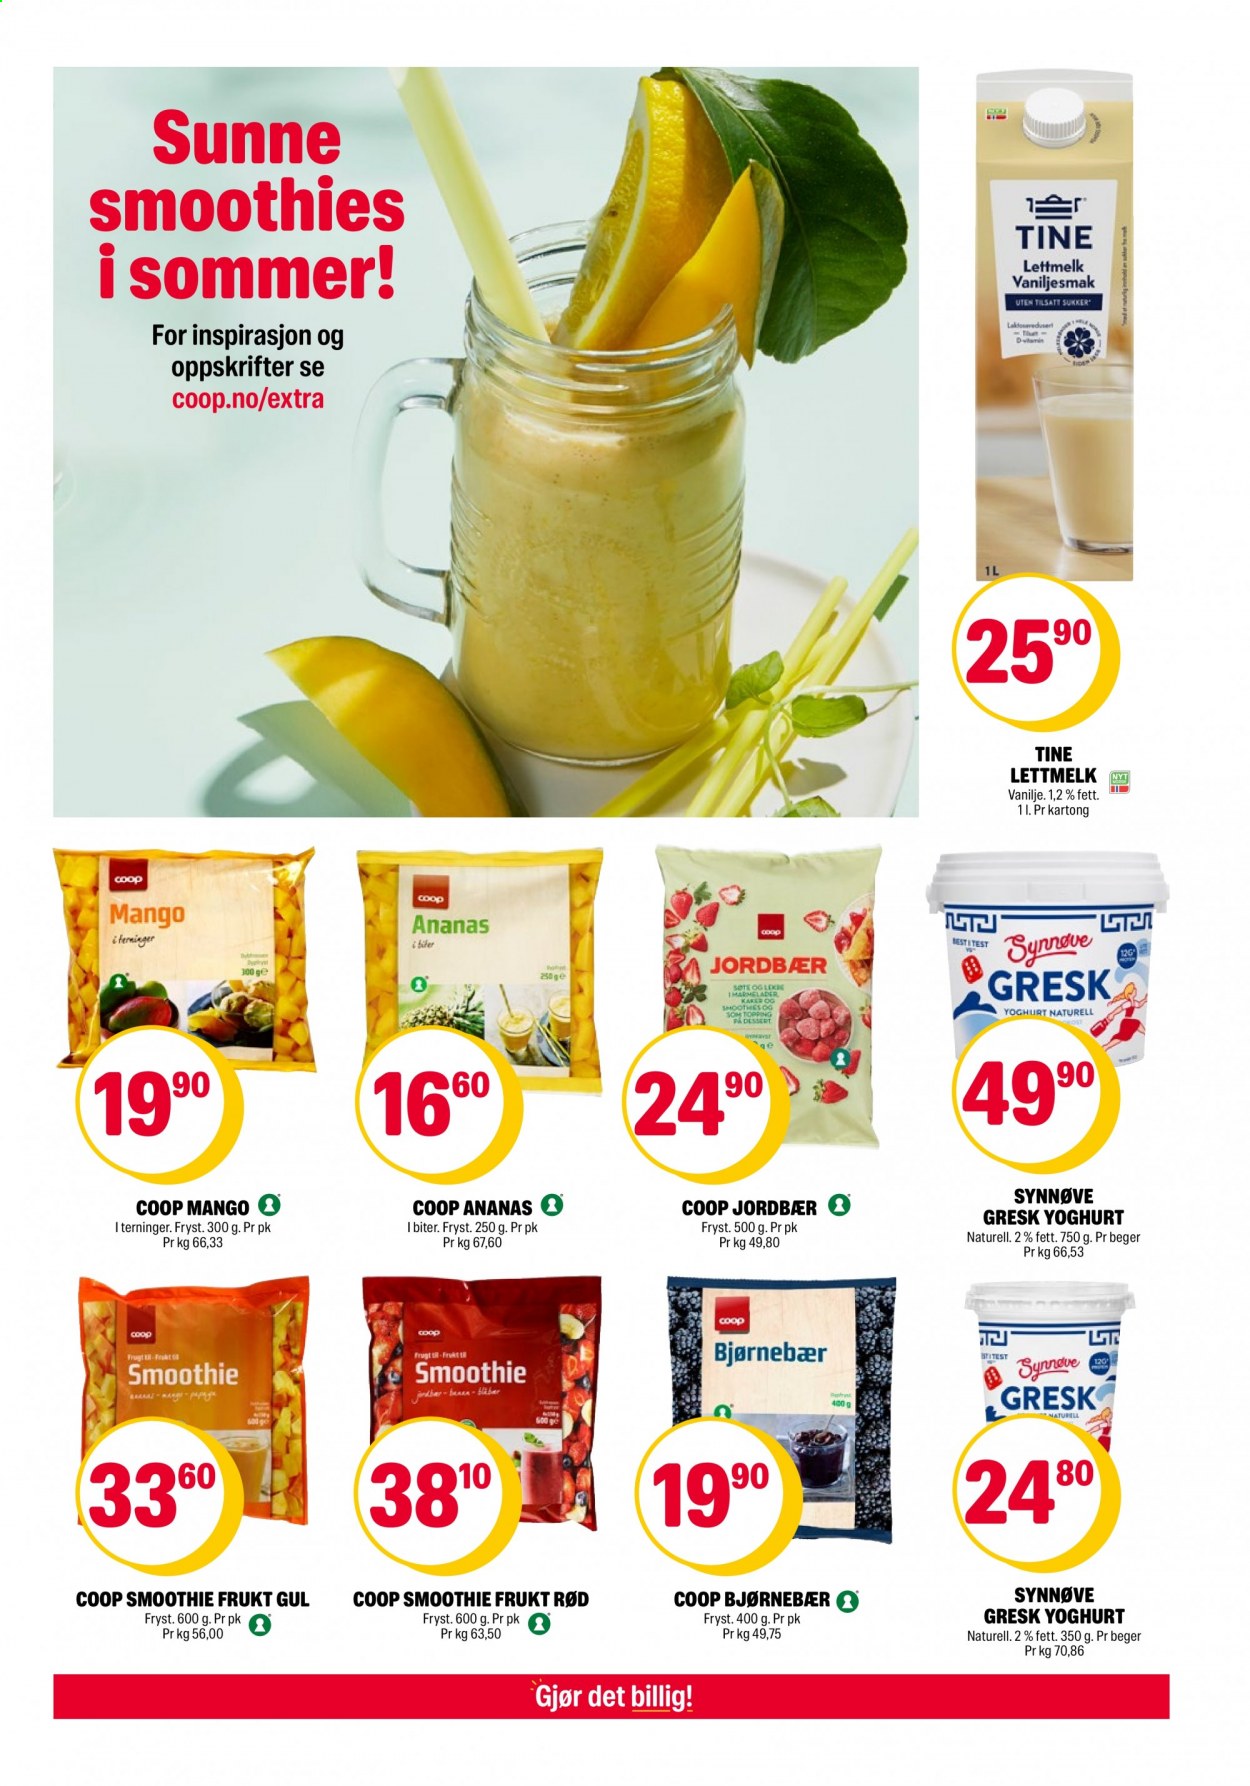 thumbnail - Kundeavis Coop Extra - 21.6.2021 - 27.6.2021 - Produkter fra tilbudsaviser - lettmelk, sukker, smoothie. Side 3.